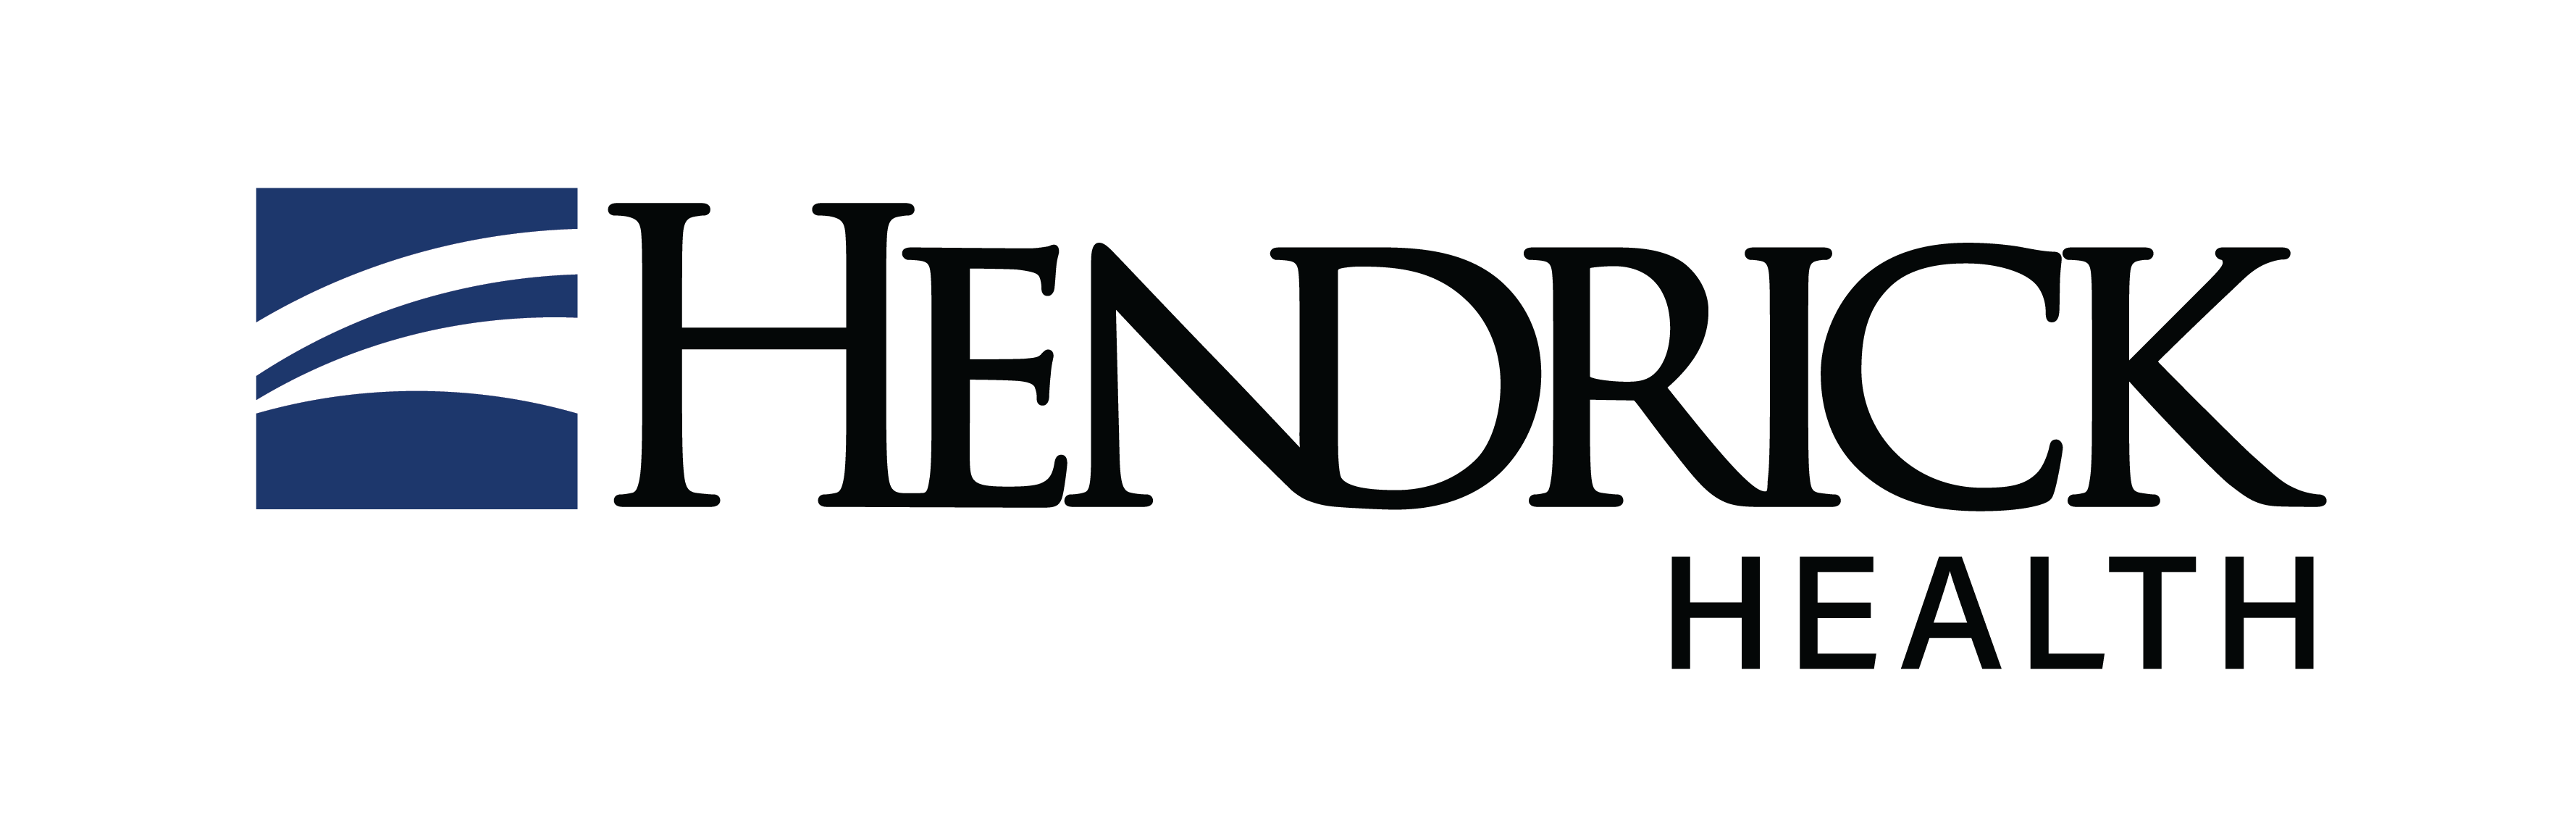 Hendrick Imaging Center logo